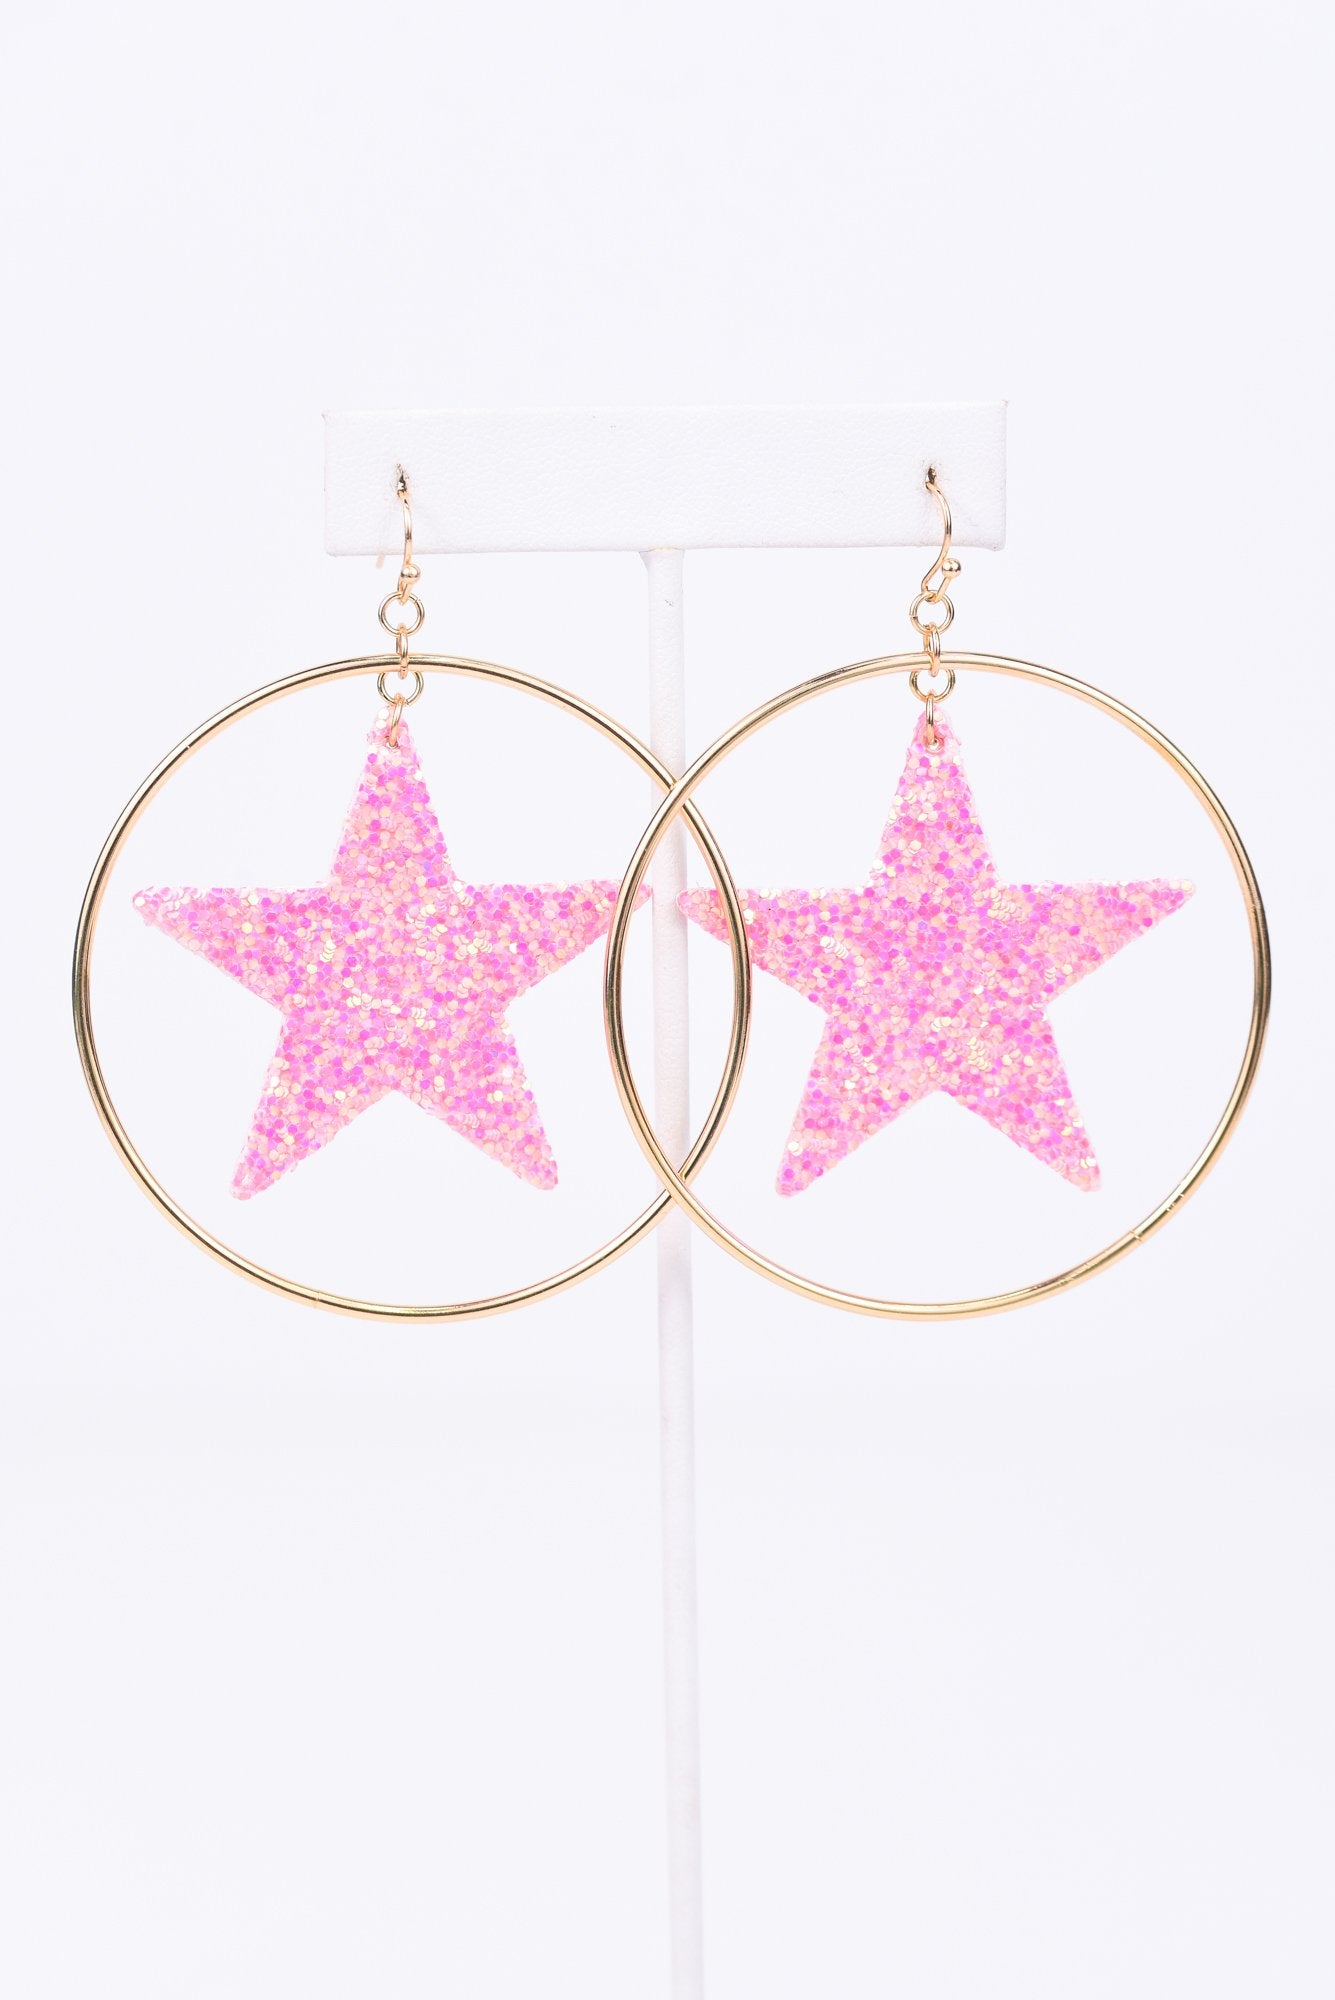 Pink Glitter Star Gold Hoop Earrings - EAR2614PK